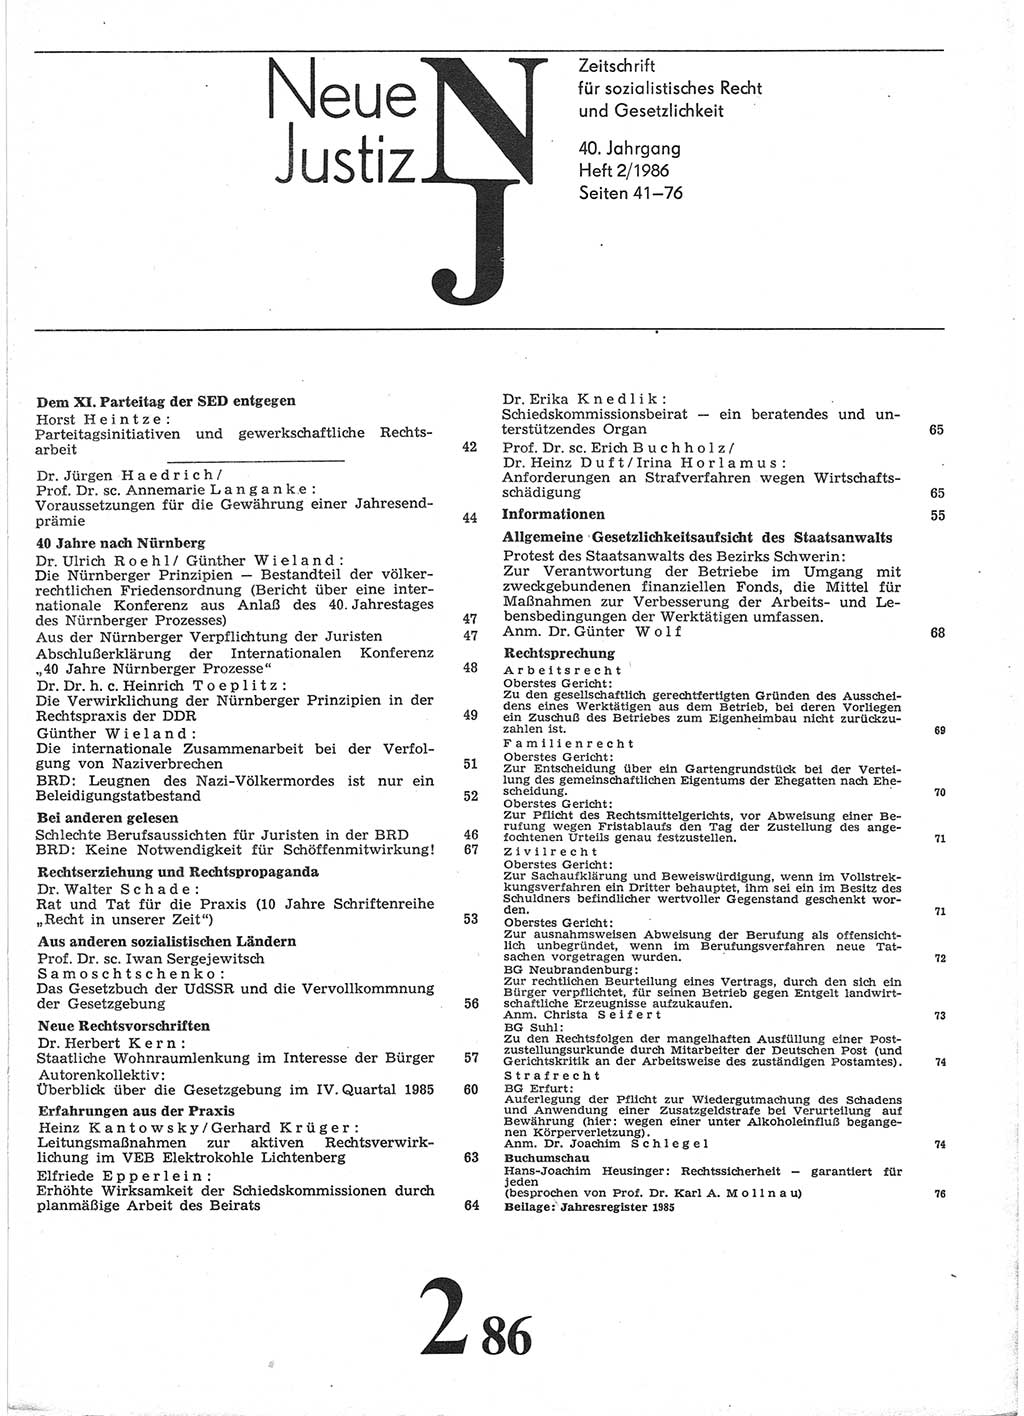 Neue Justiz (NJ), Zeitschrift für sozialistisches Recht und Gesetzlichkeit [Deutsche Demokratische Republik (DDR)], 40. Jahrgang 1986, Seite 41 (NJ DDR 1986, S. 41)